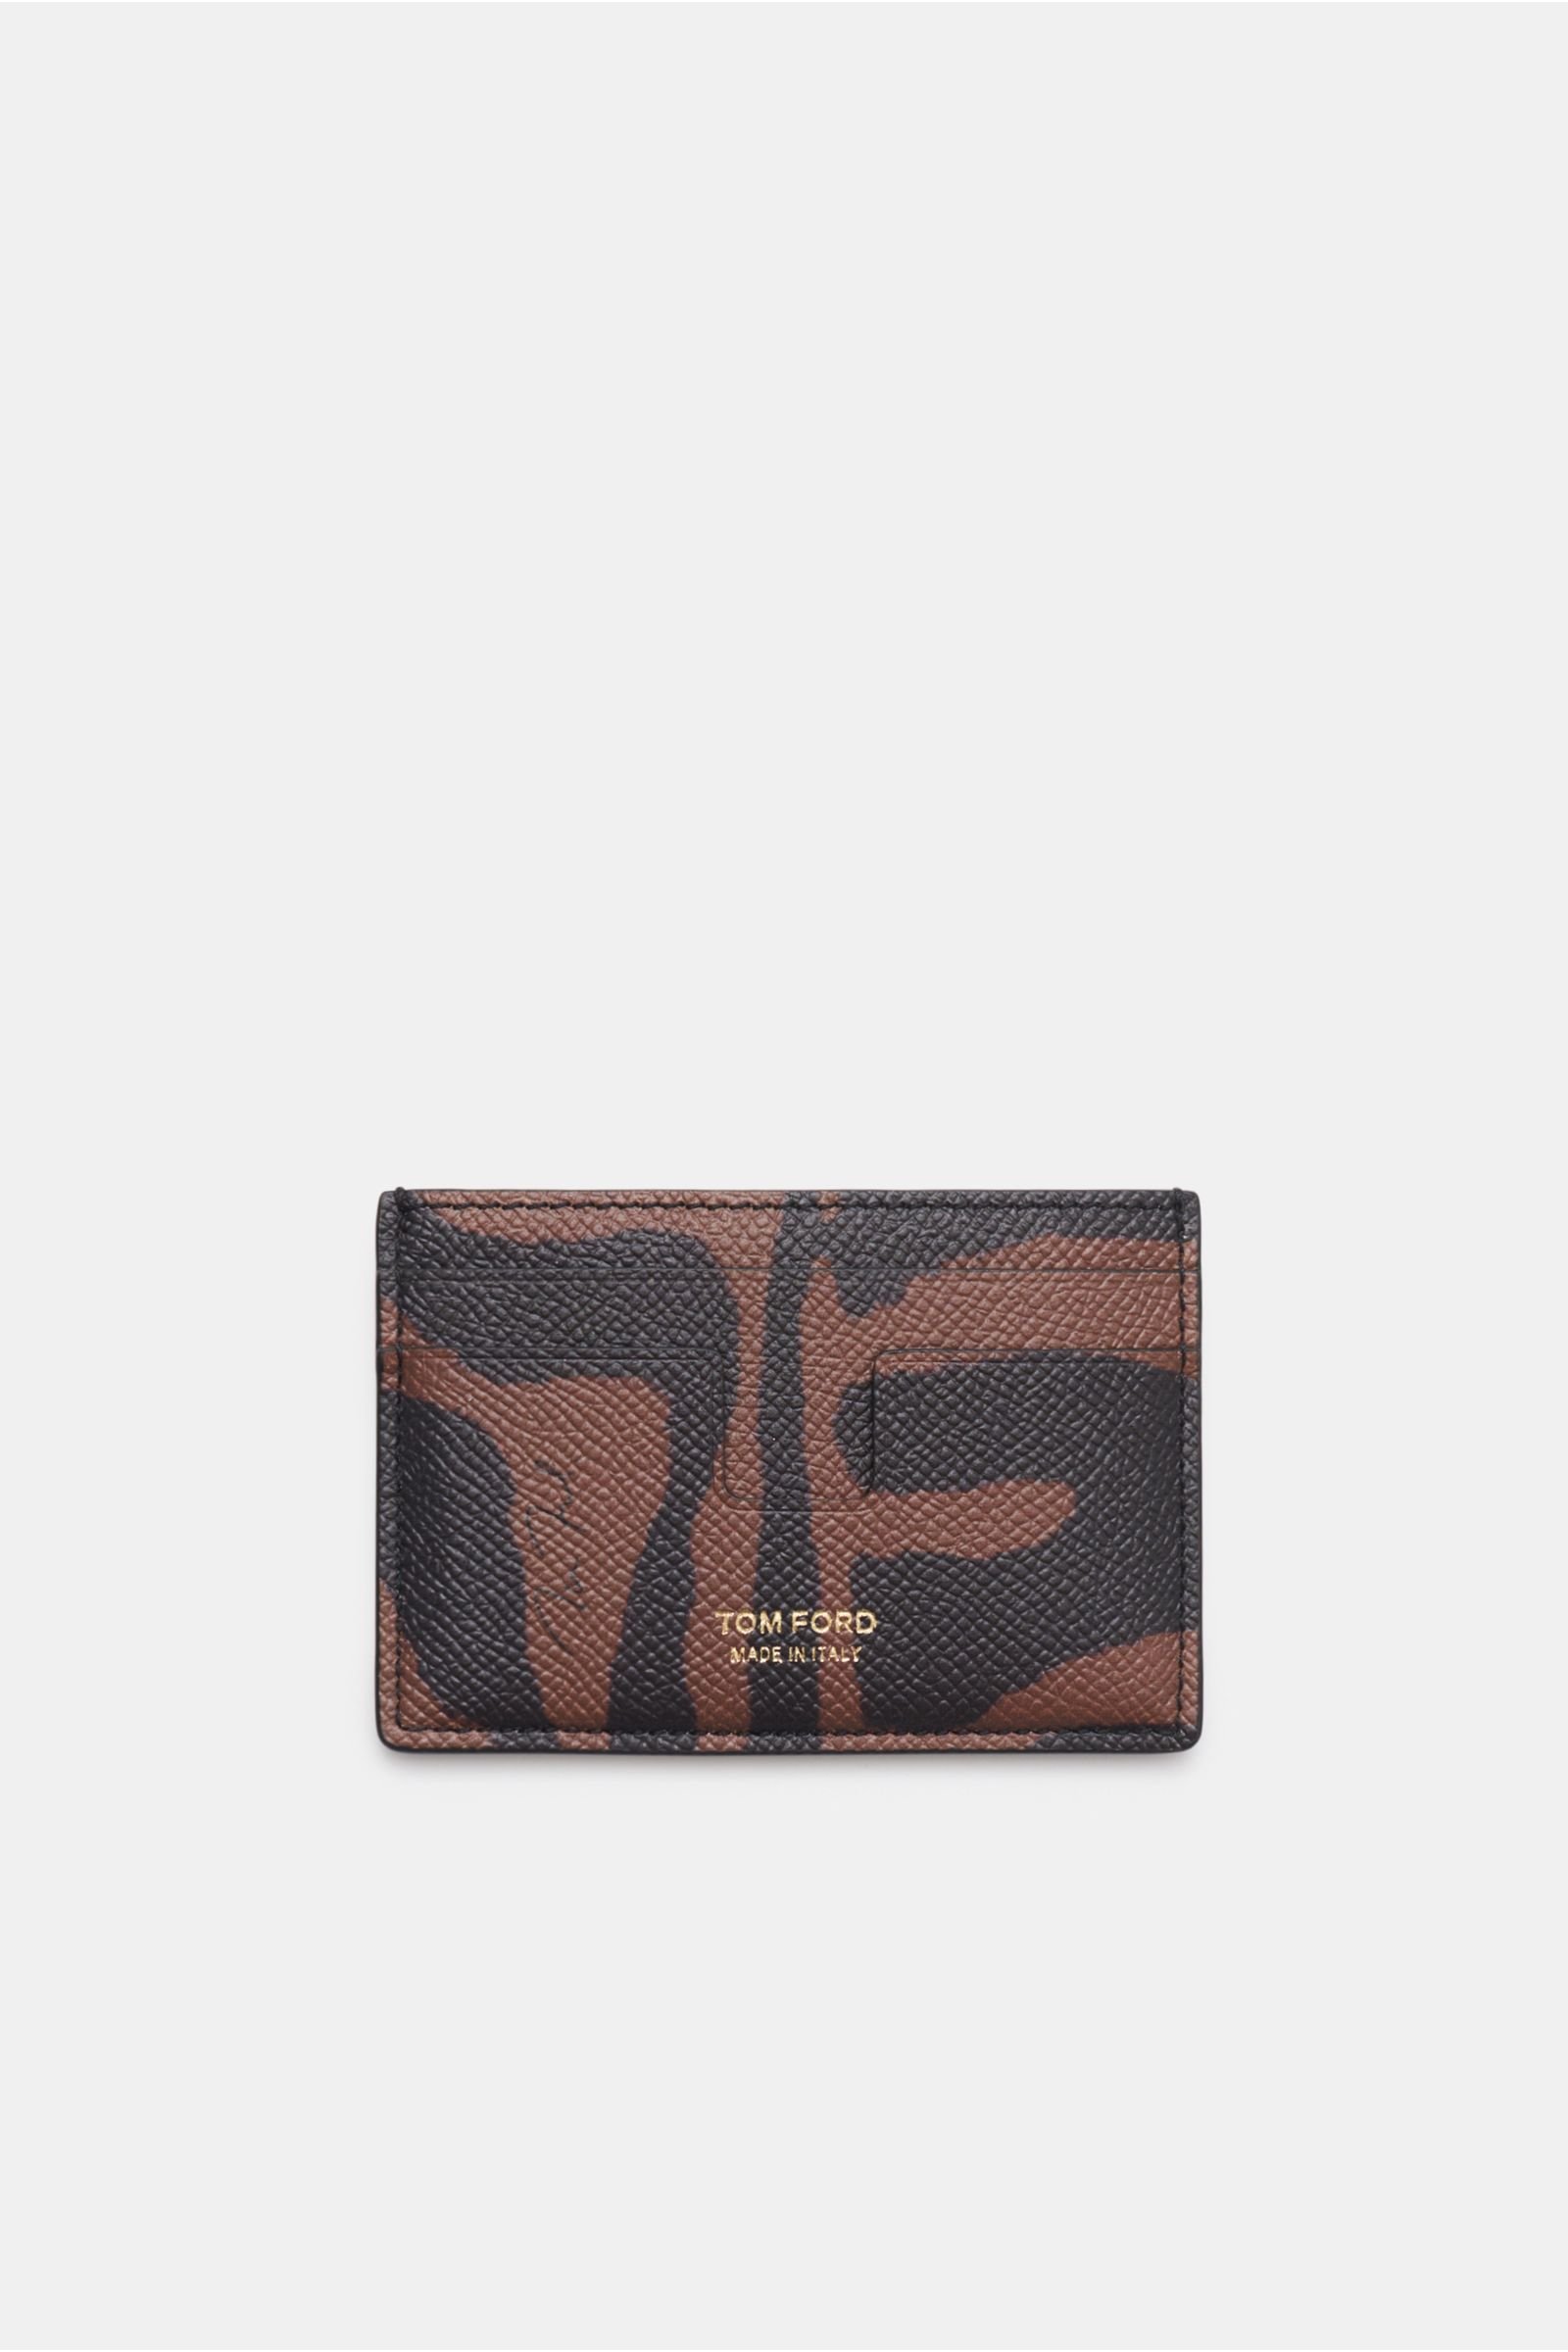 Credit card holder black/brown patterned